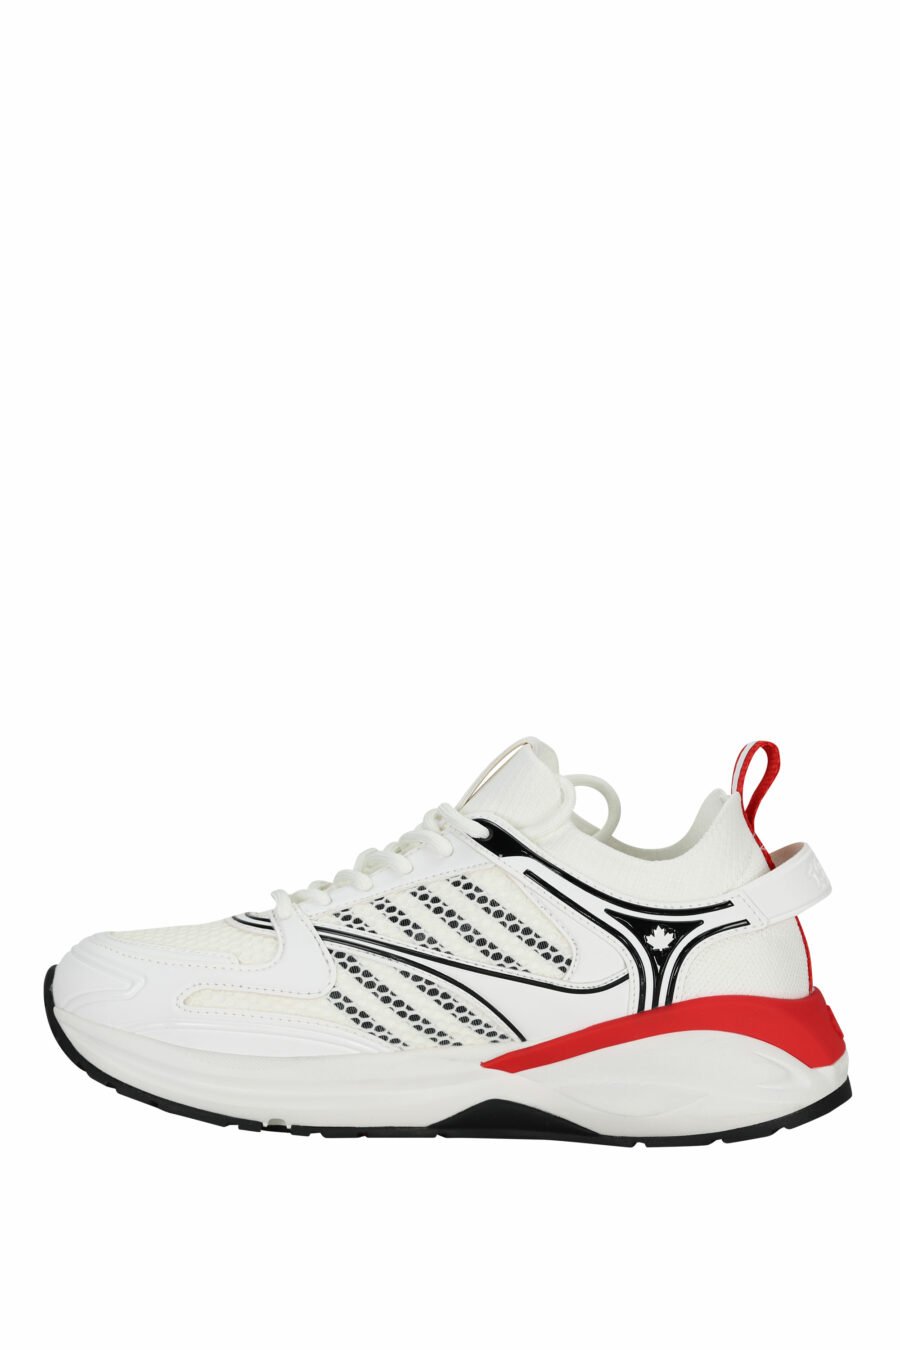 Zapatillas blancas "dash" con rojo - 805777318317 2